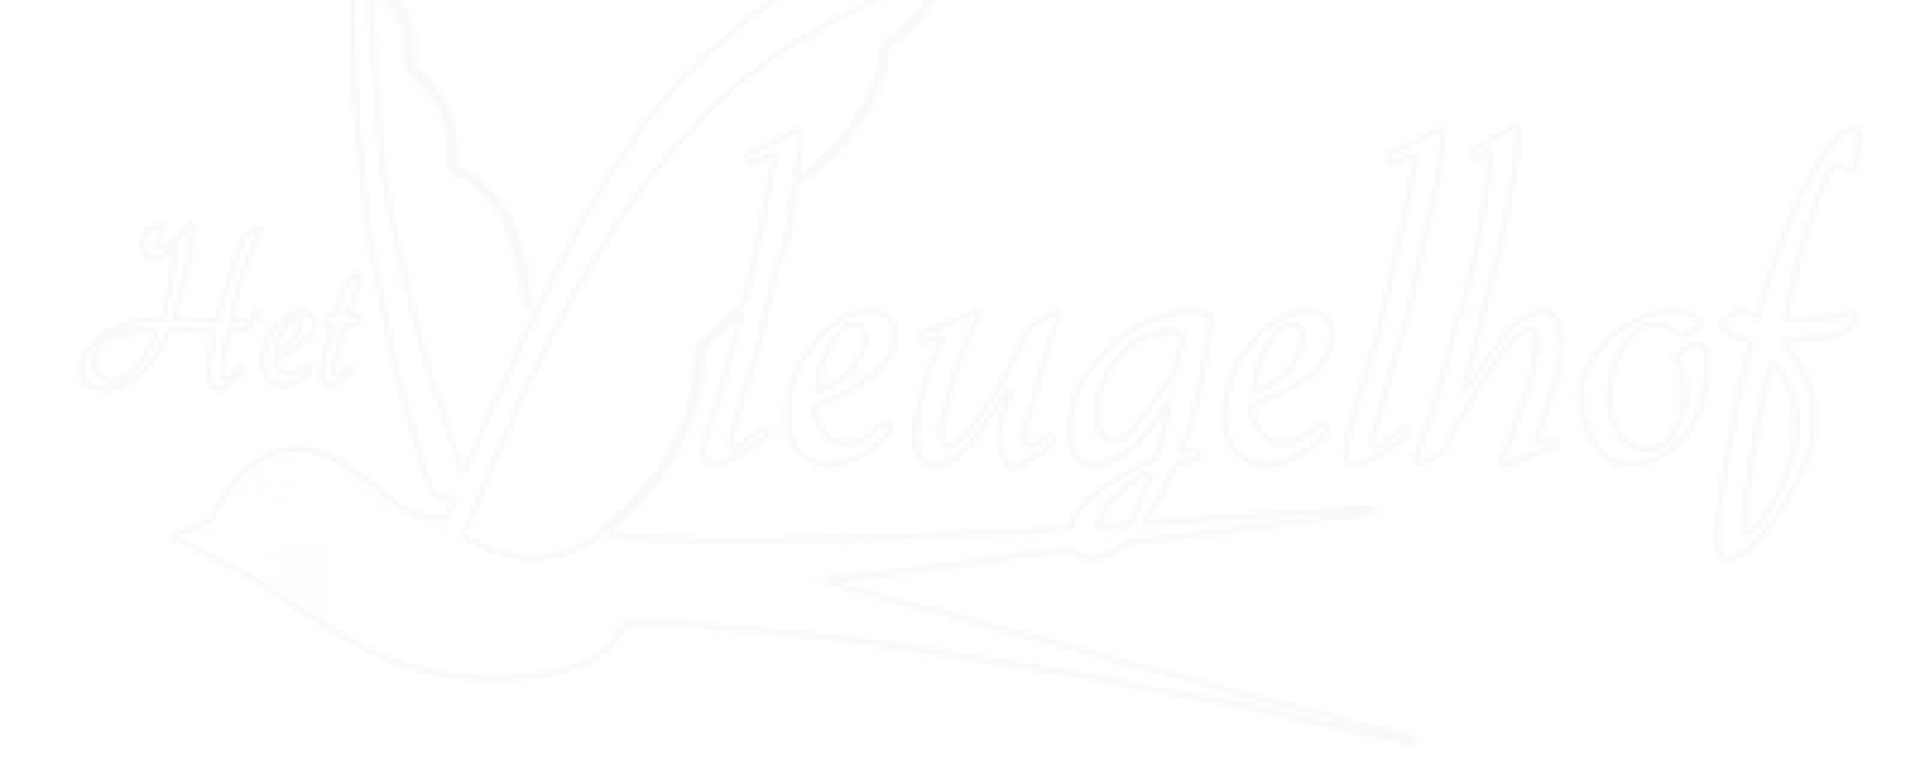 vleugelhof logo2